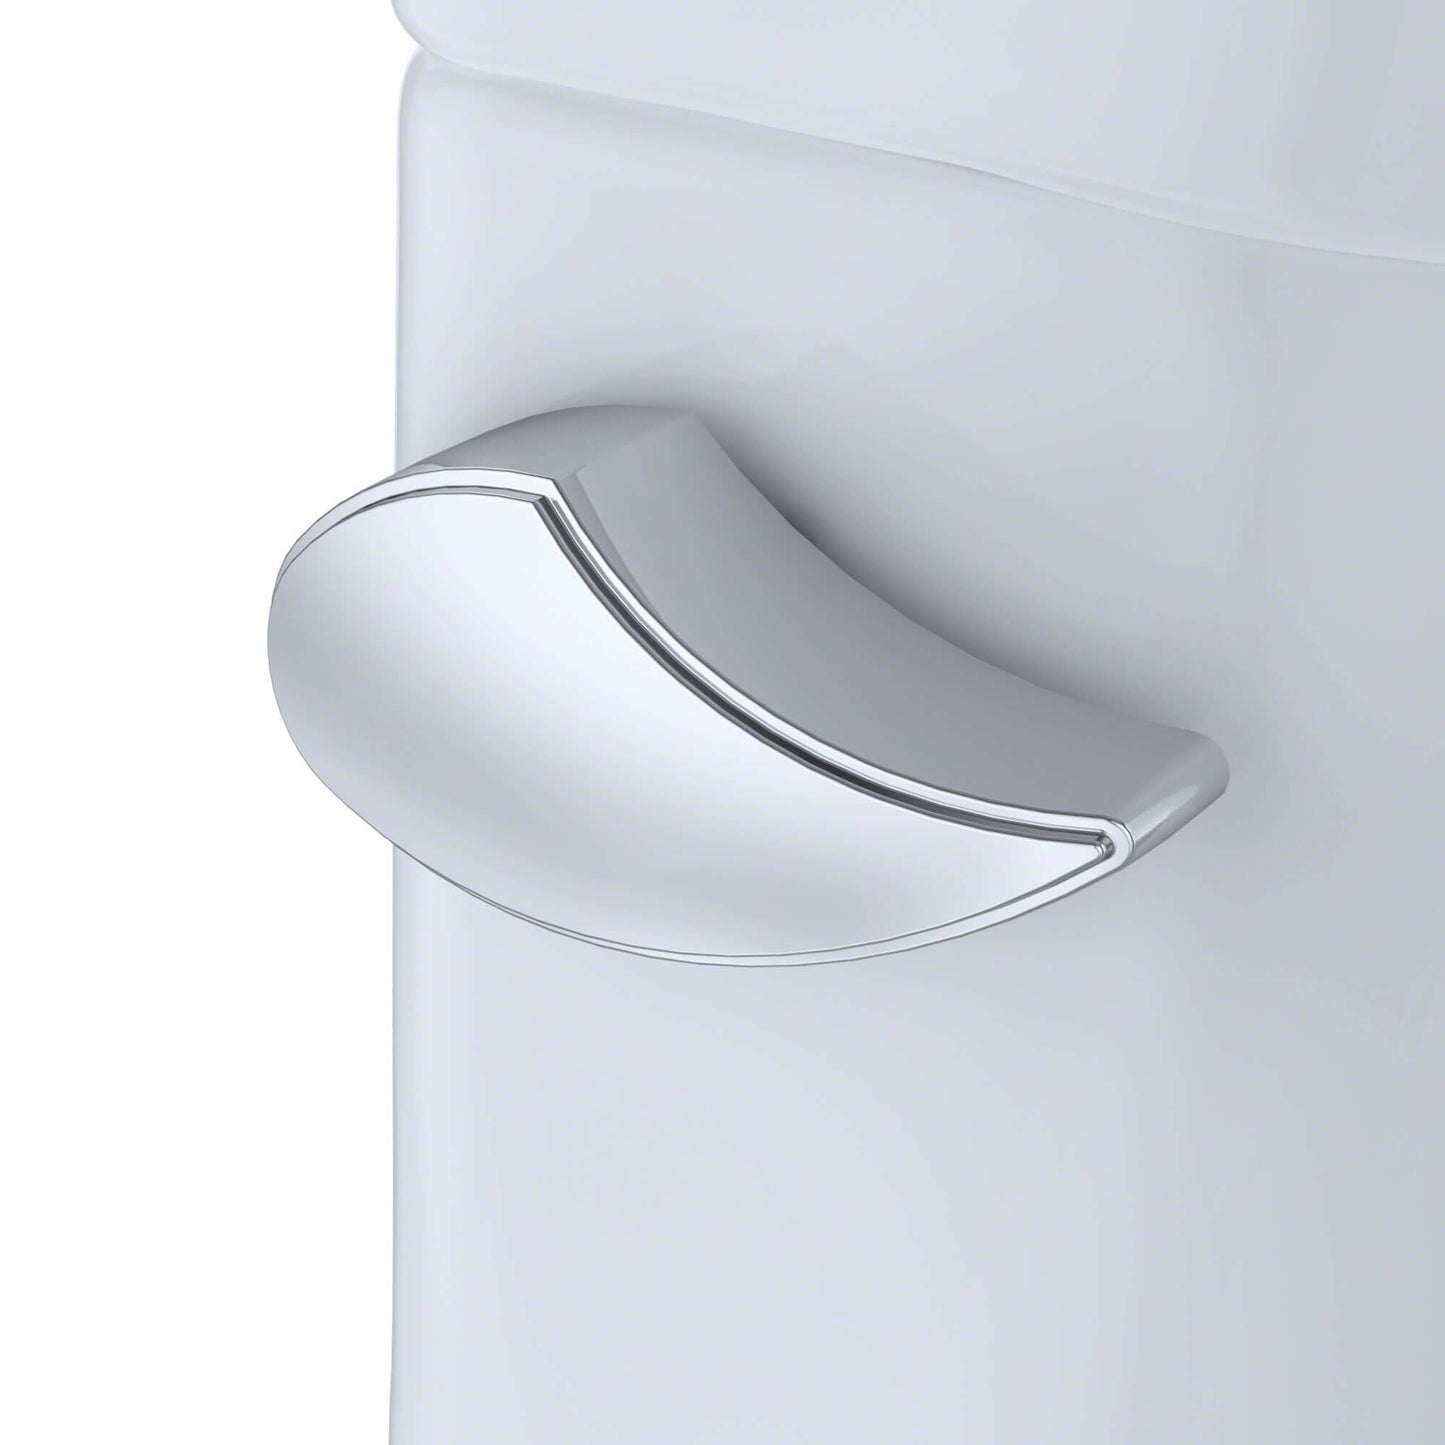 TOTO Drake WASHLET 1.6 Toilet C2 Bidet Seat MW7763074CSG#01